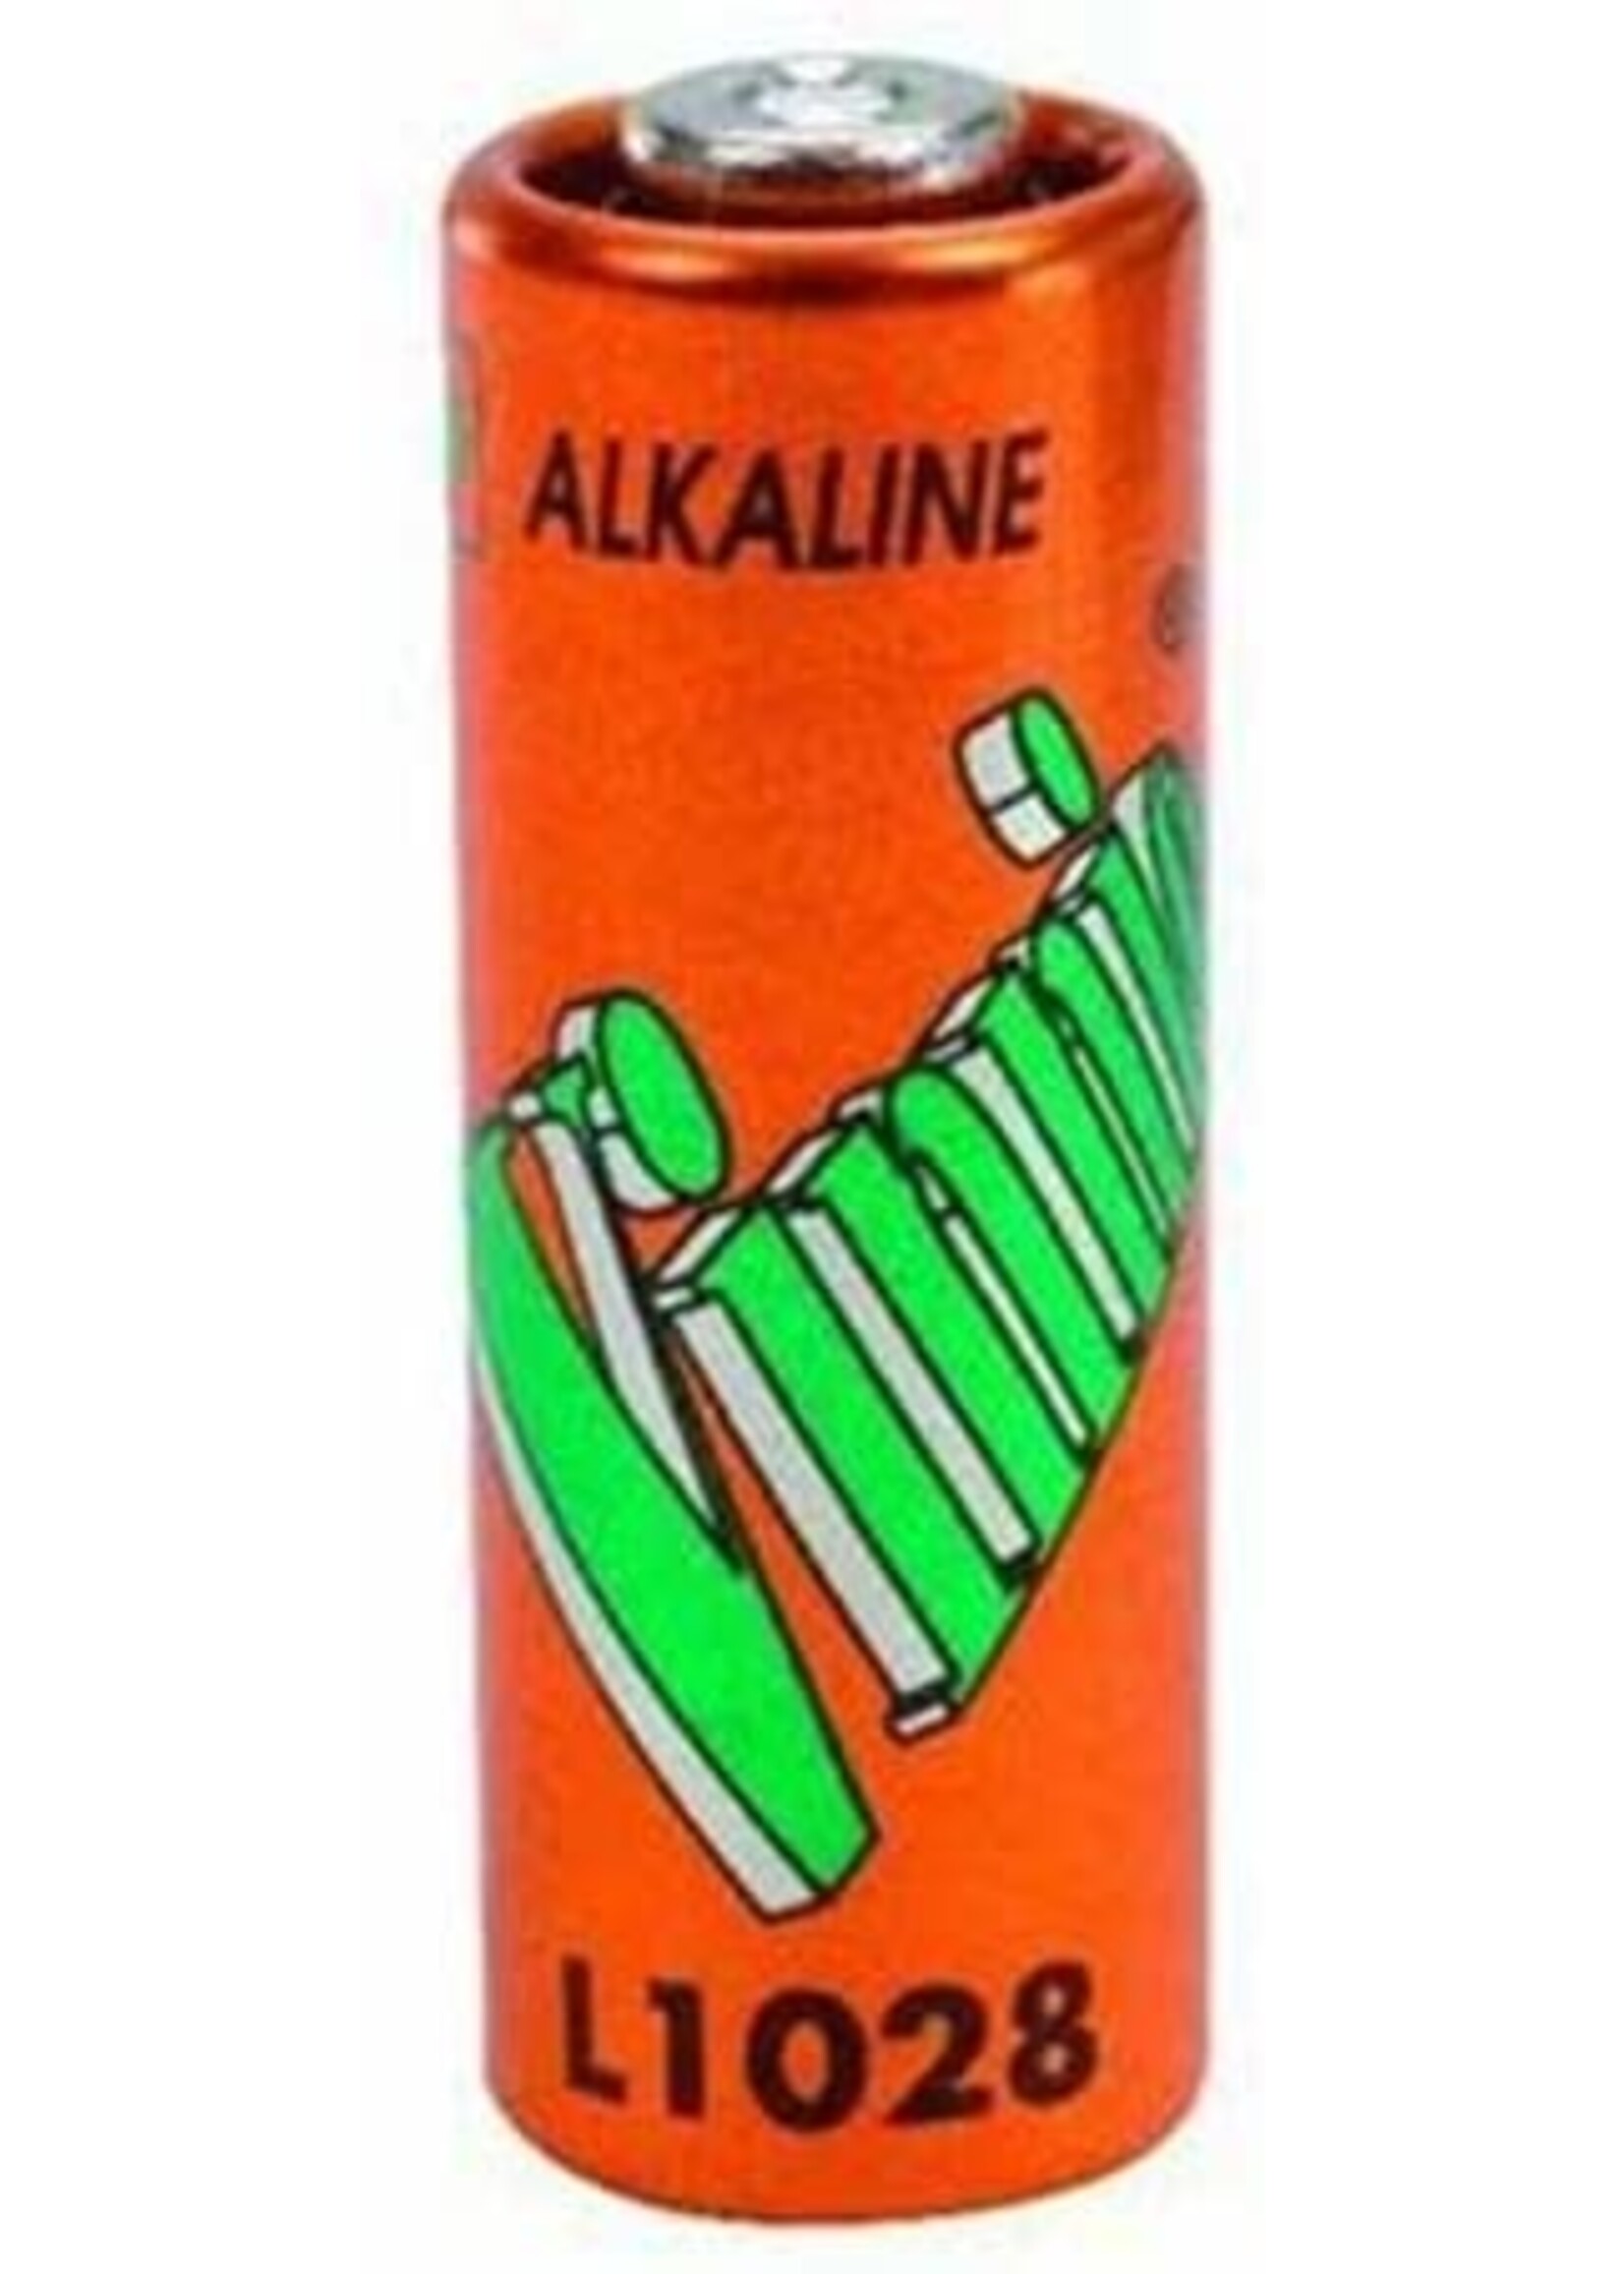 VINNIC 12V Alkaline A23 battery